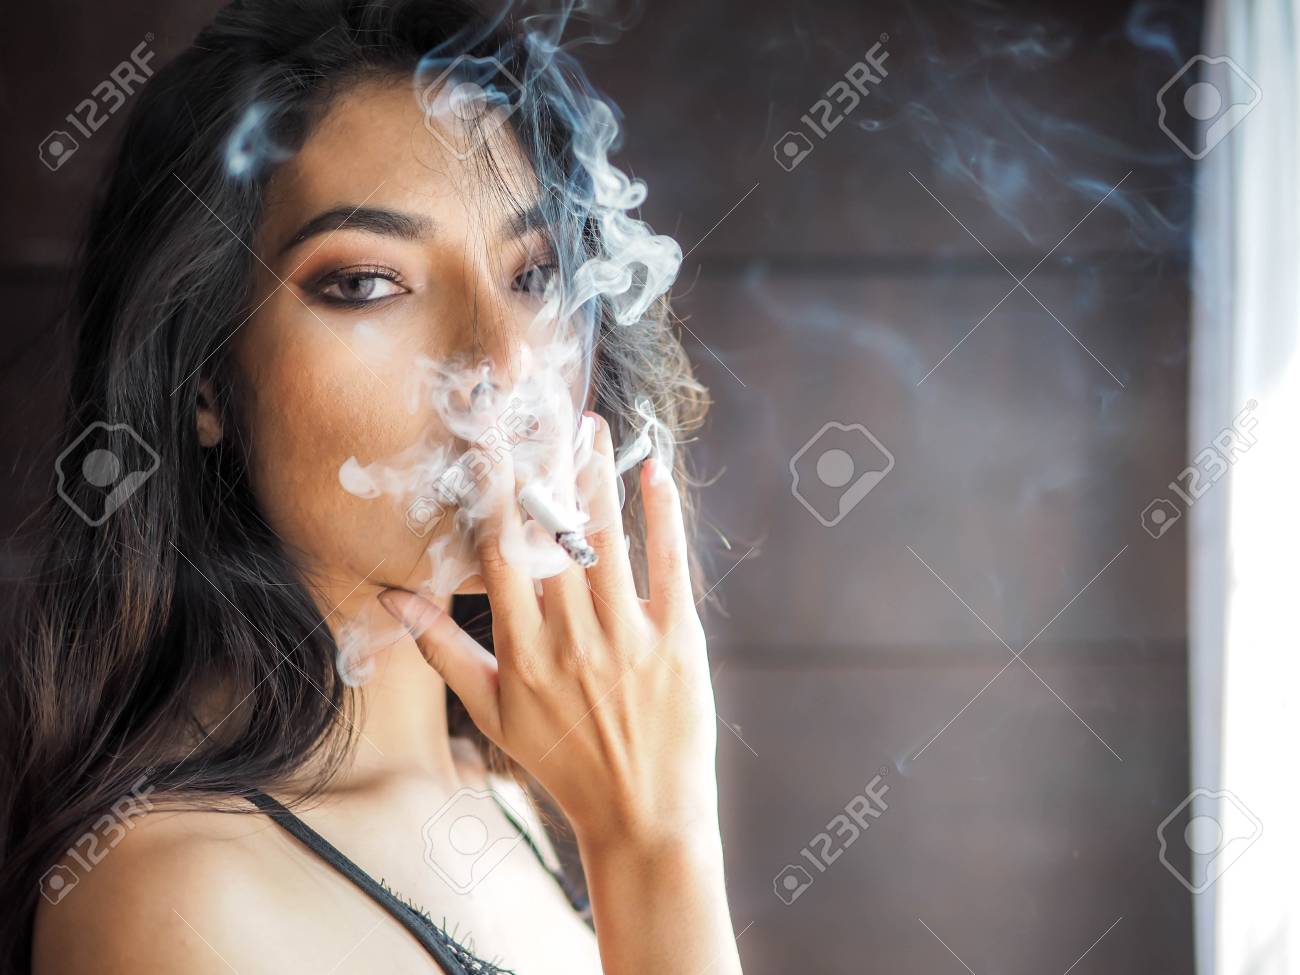 beautiful women smoking weed